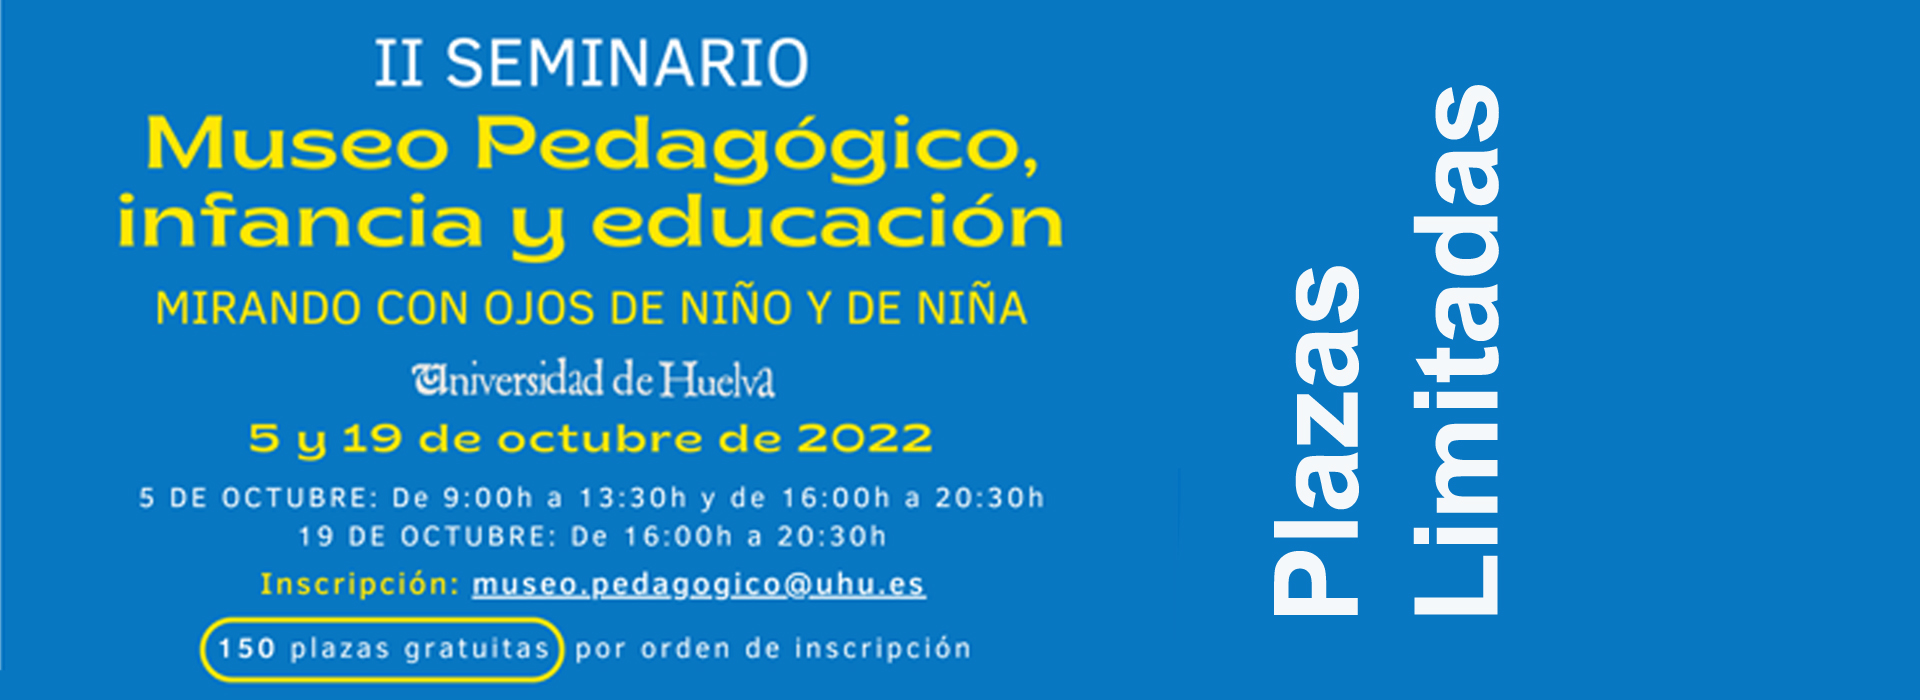 2022/Banners-Decanato2022-30-IISeminarioDelMuseoPedagogicoInfanciaYEducacion.jpg